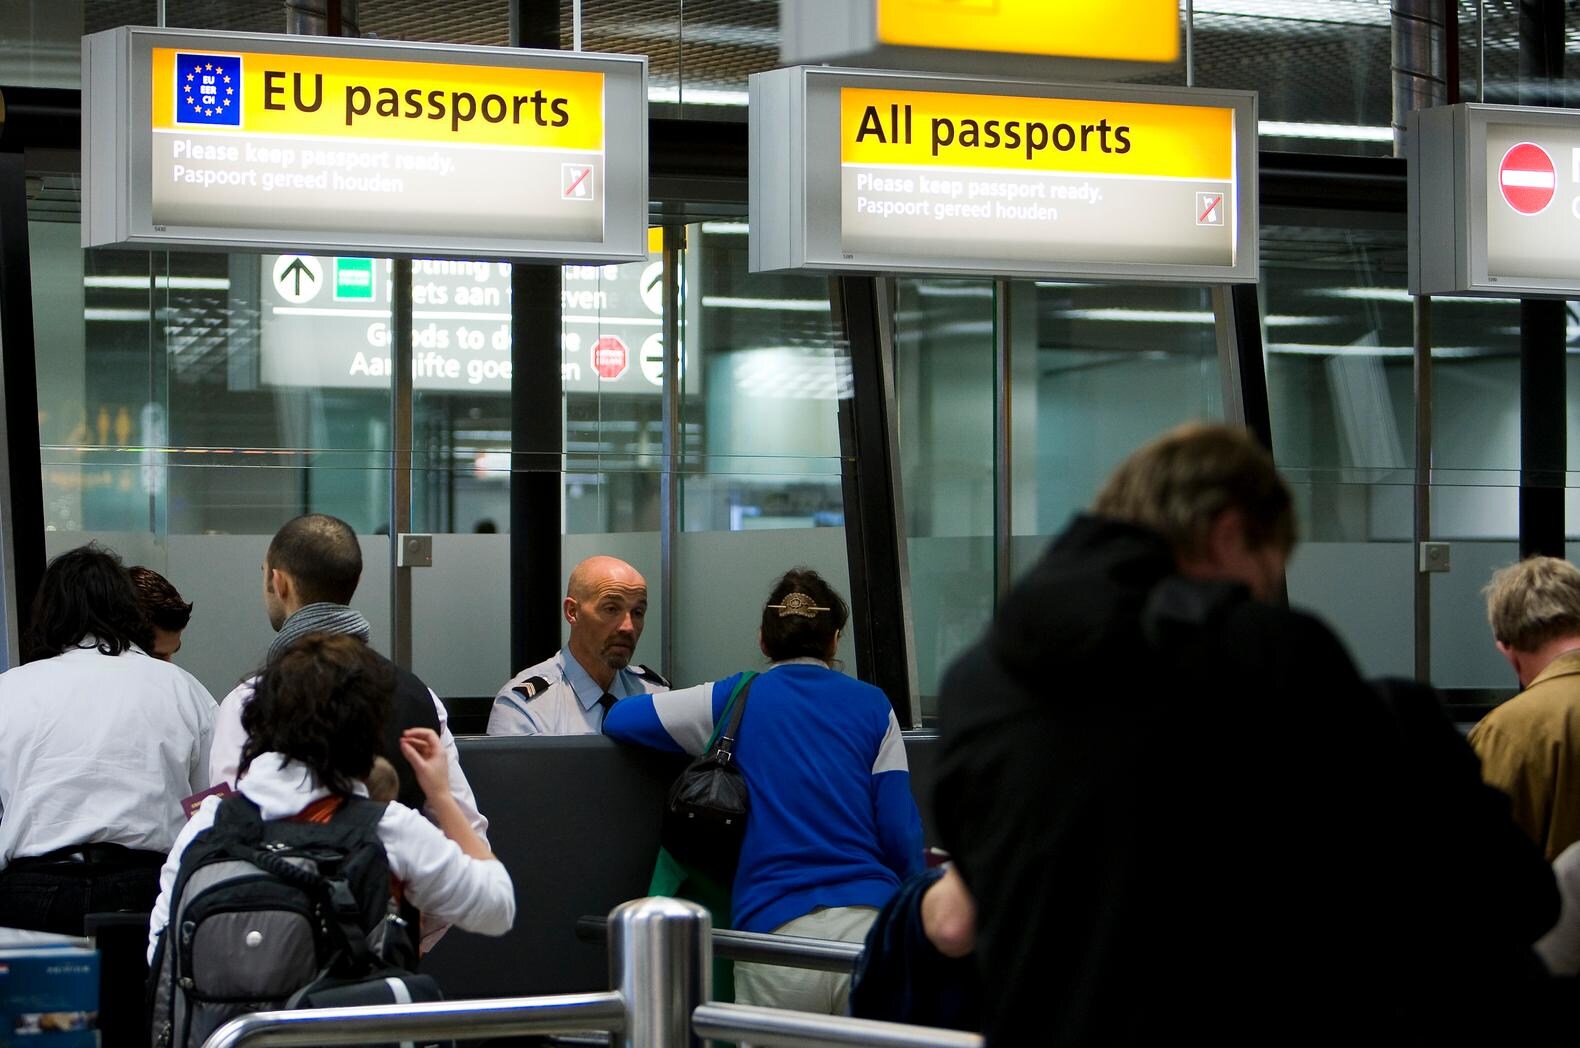 Oekraïners kunnen binnenkort zonder visum naar de EU reizen